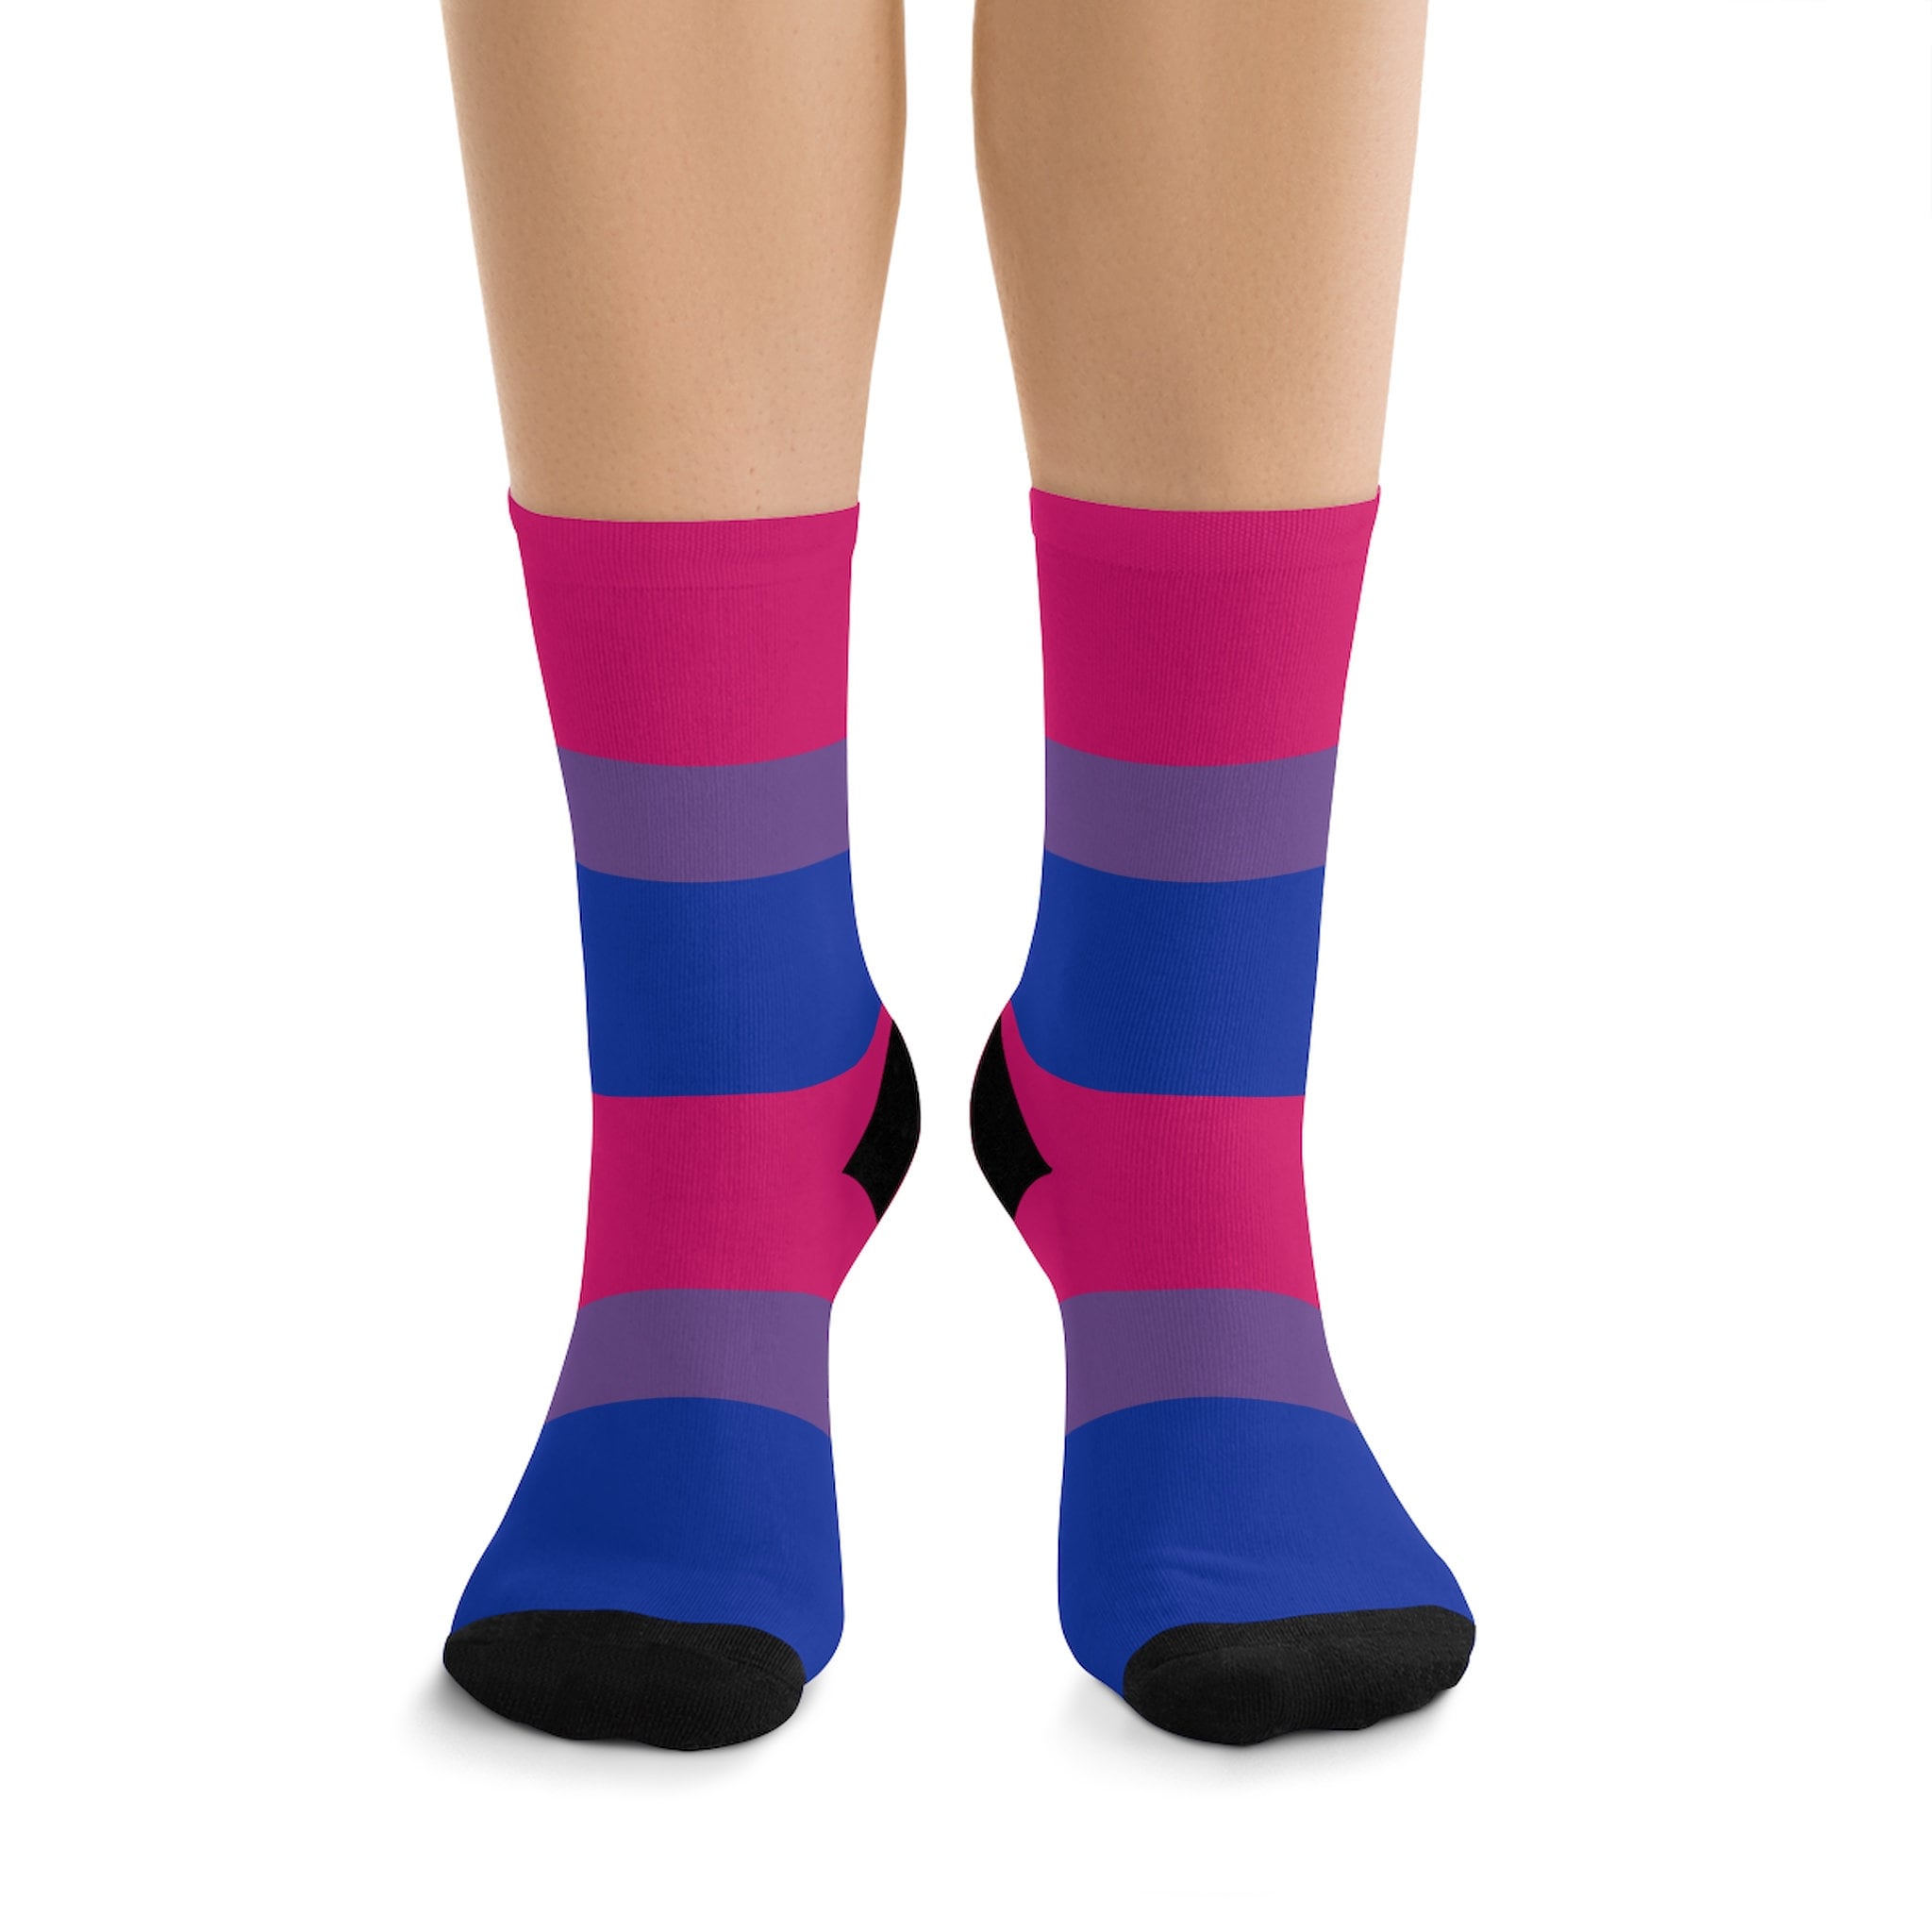 Bisexual Pride Flag Socks Bi Pride Socks LGBT Accessories | Etsy